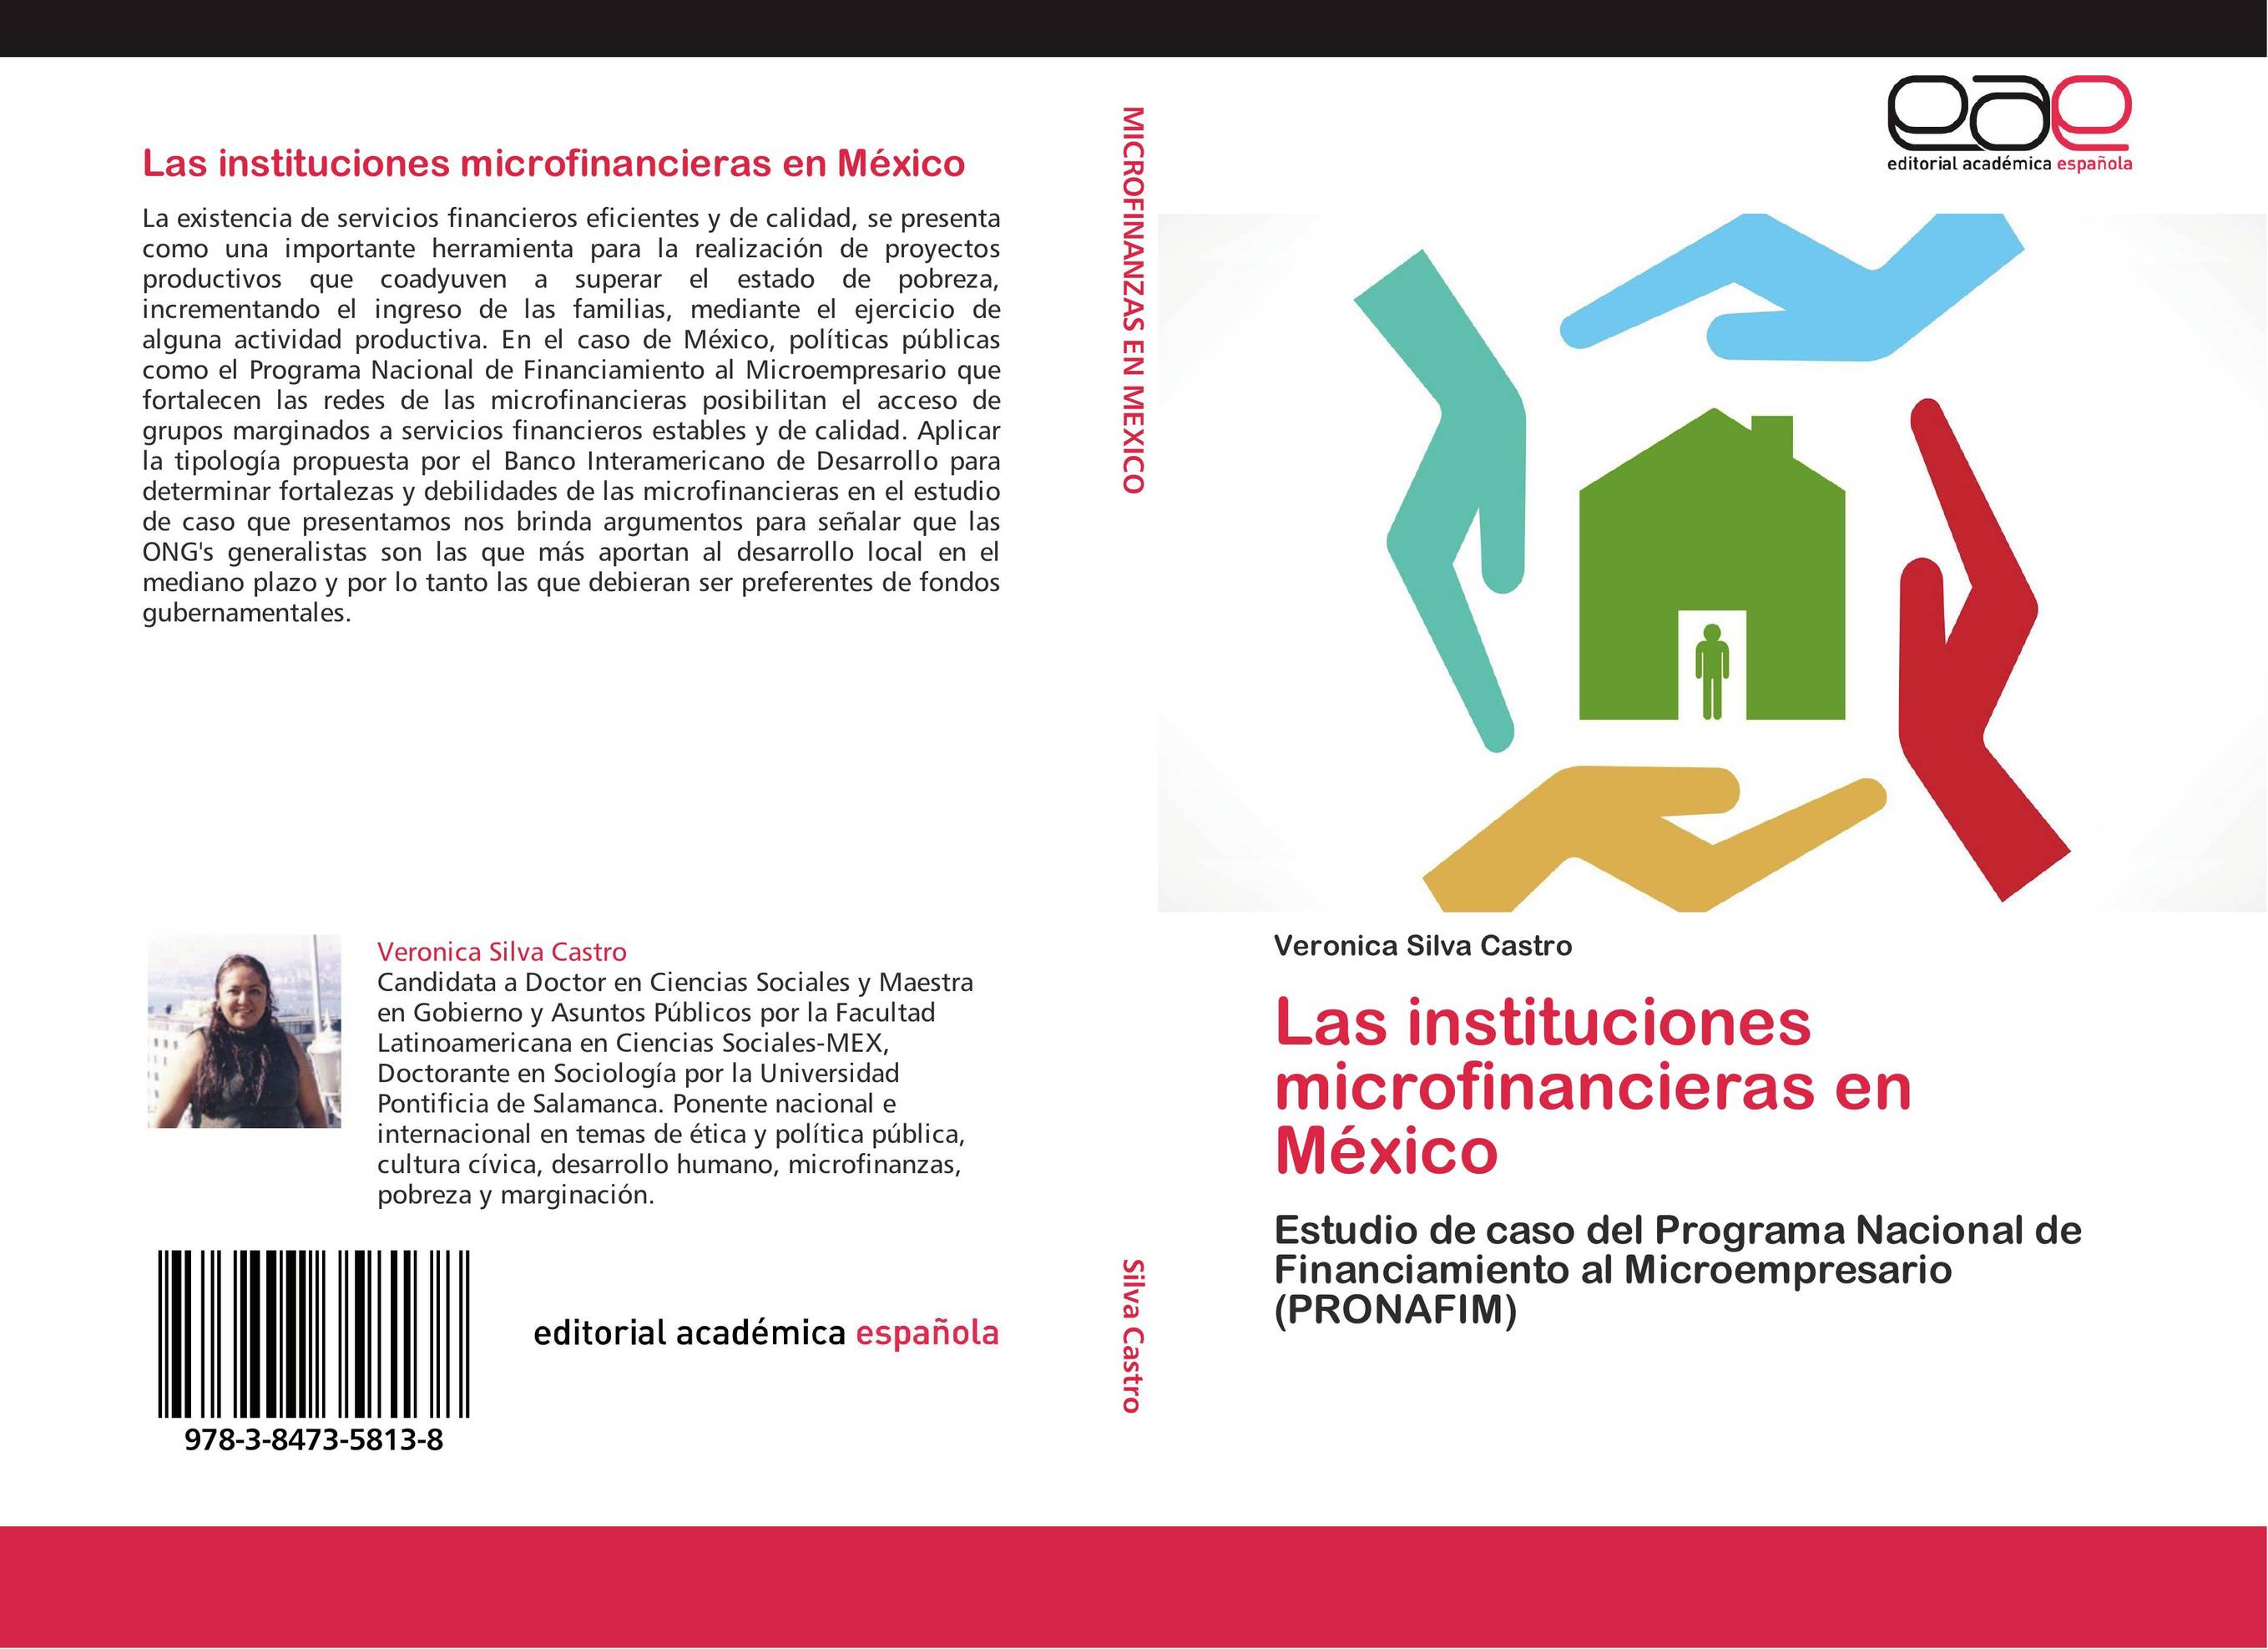 Las instituciones microfinancieras en México